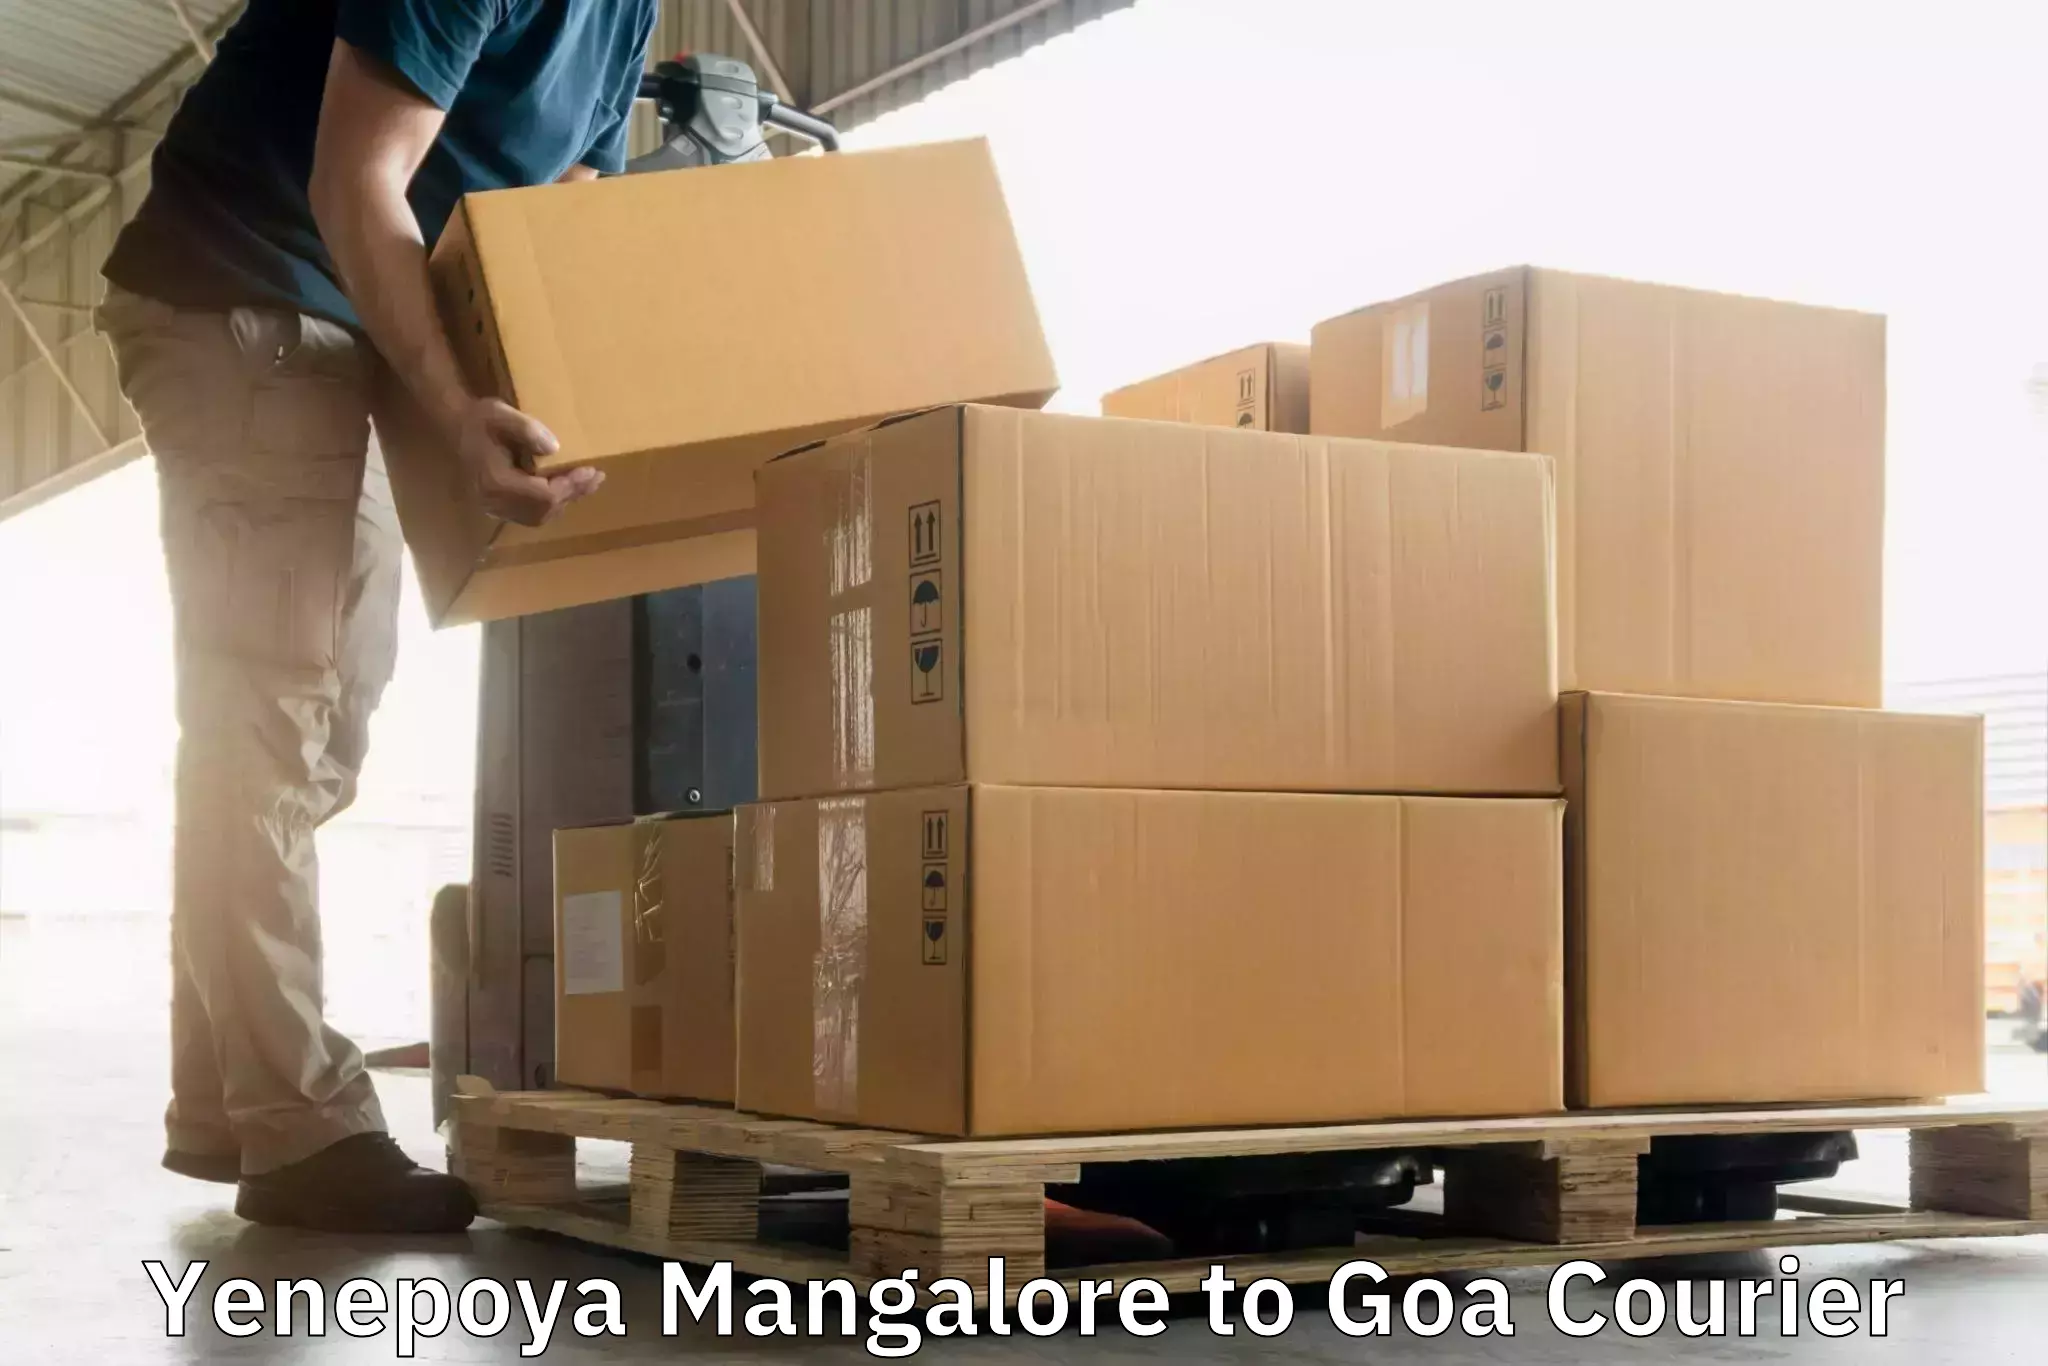 Nationwide shipping coverage Yenepoya Mangalore to IIT Goa